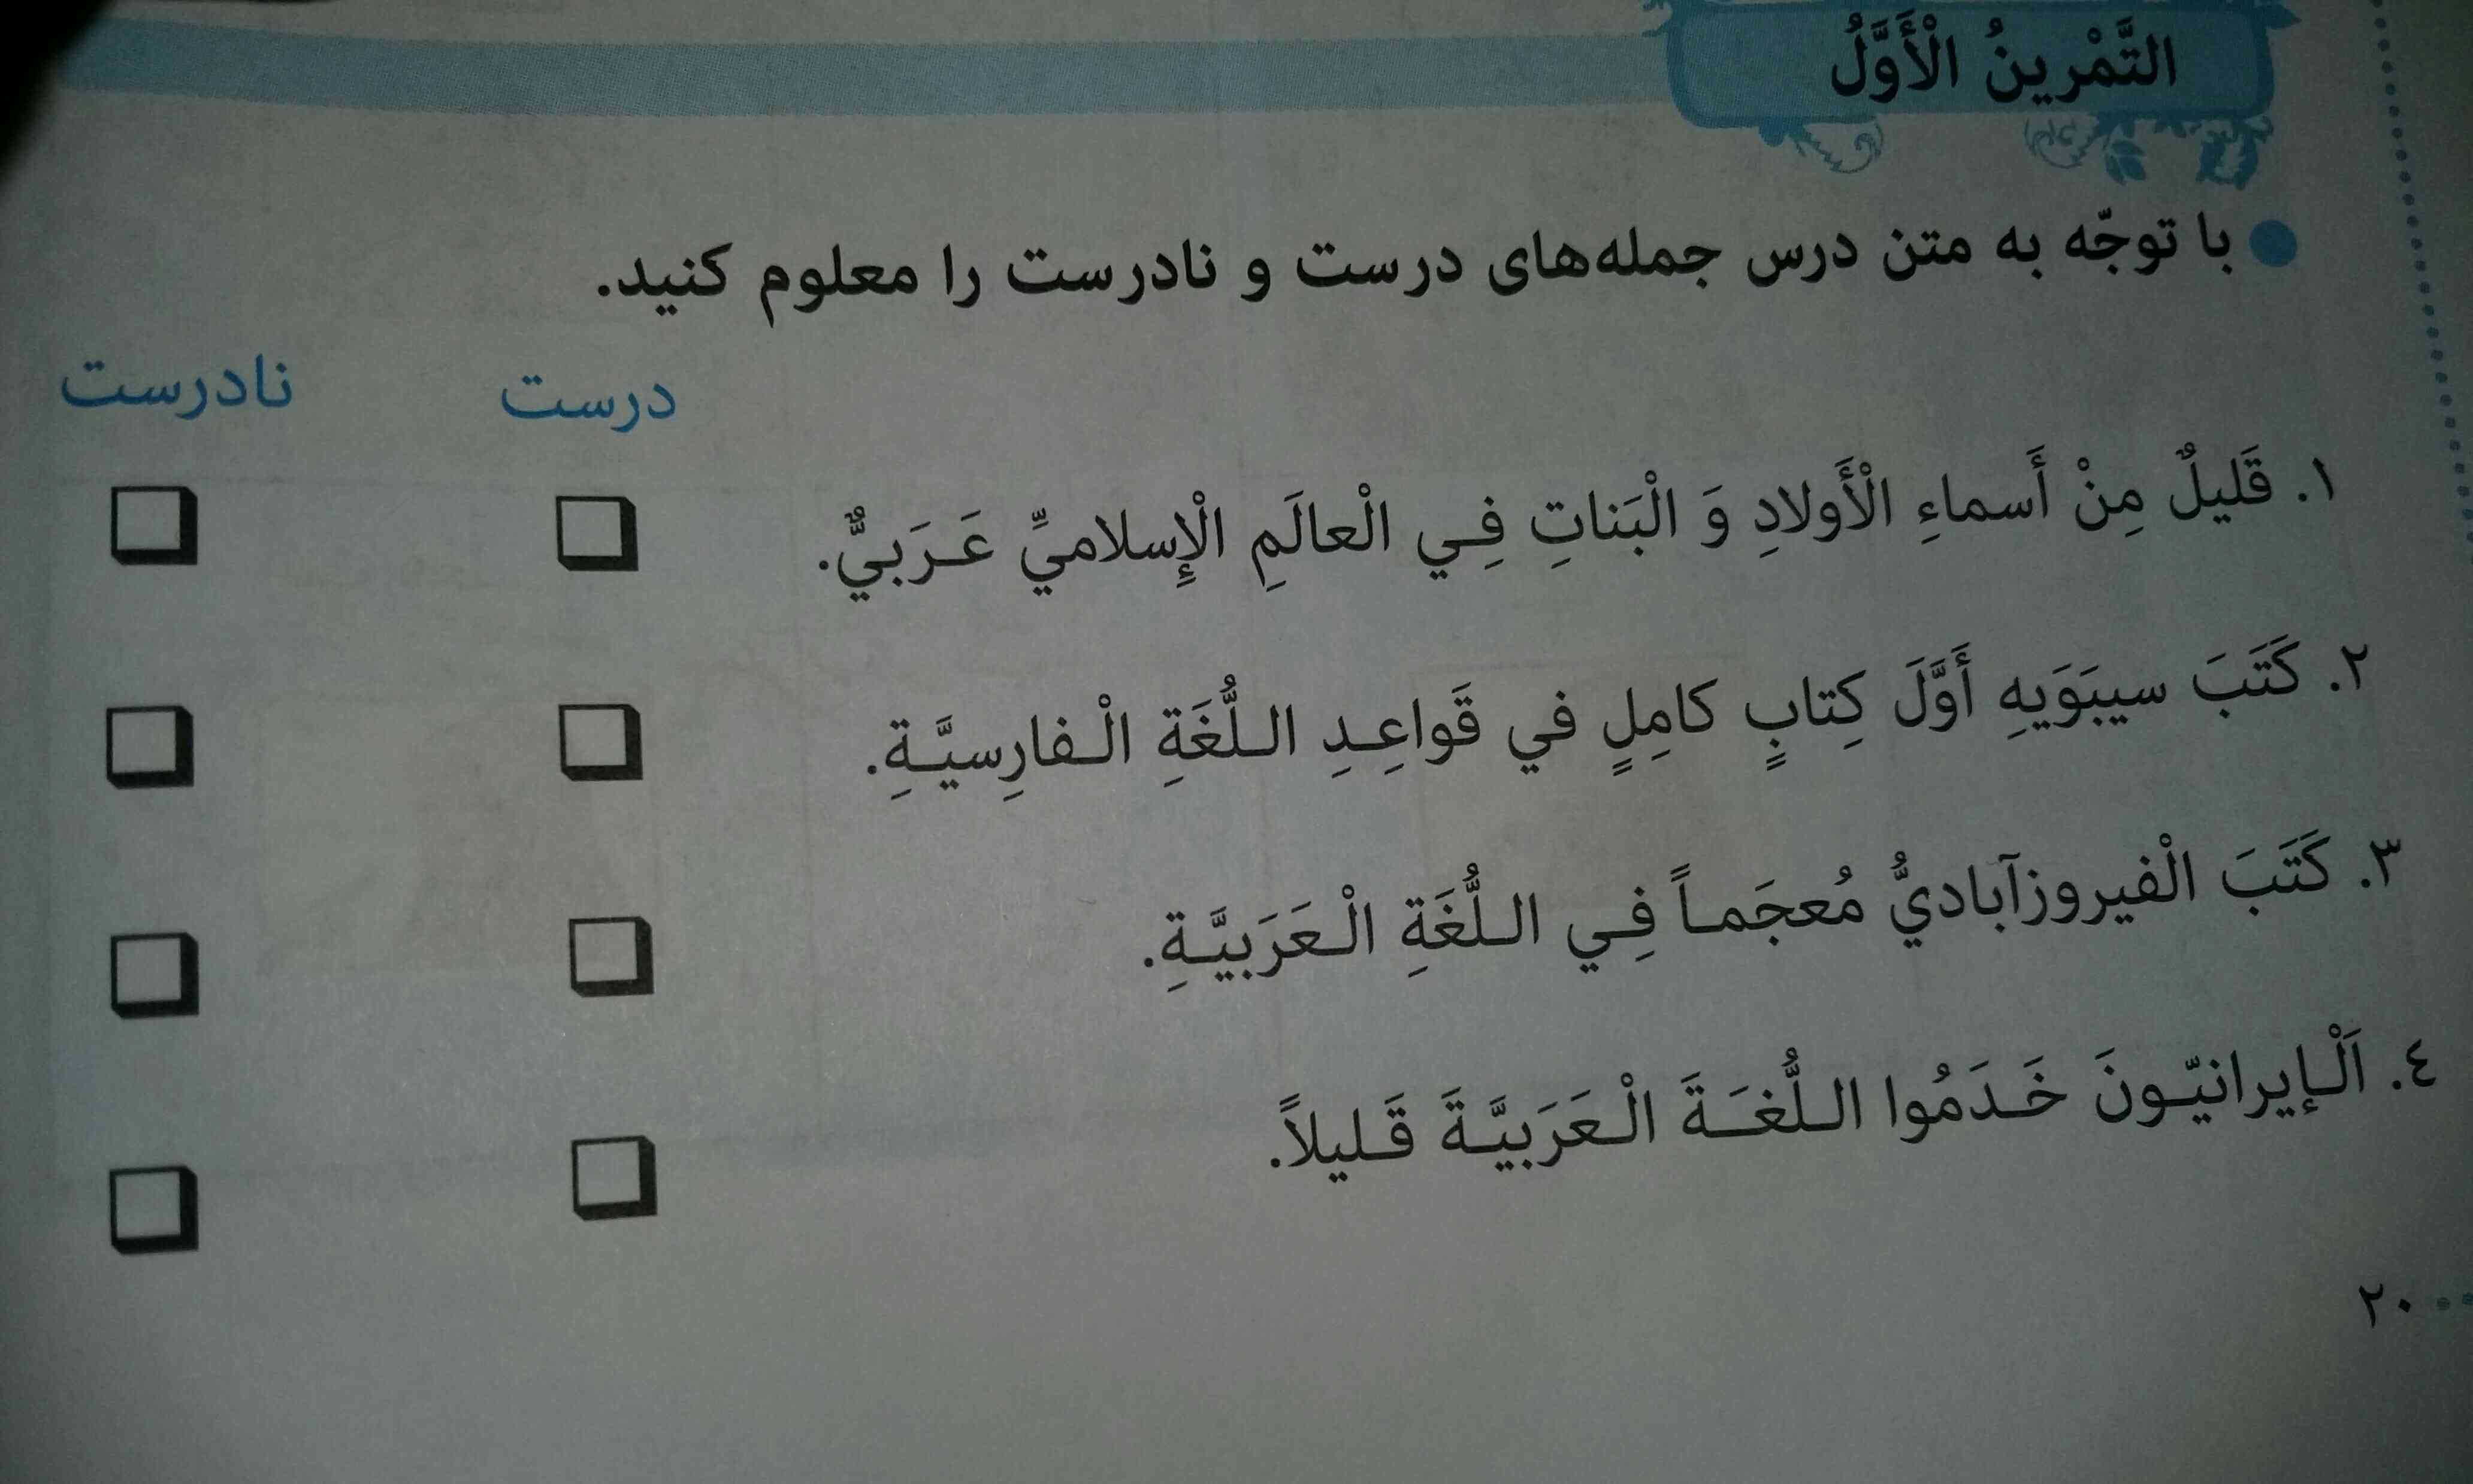 سلام لطفا هرچه زودتر جواب عربی هشتم را درس ۲ را به من بدهید ممنون میشوم لطفا هرکی میداند جواب ها را هرچه زودتر به من بدهید وص۲۰تاص۲۸ به من جواب درس ۲ عربی را از ۲۰ تاص۲۸ را به من جواب بدهید